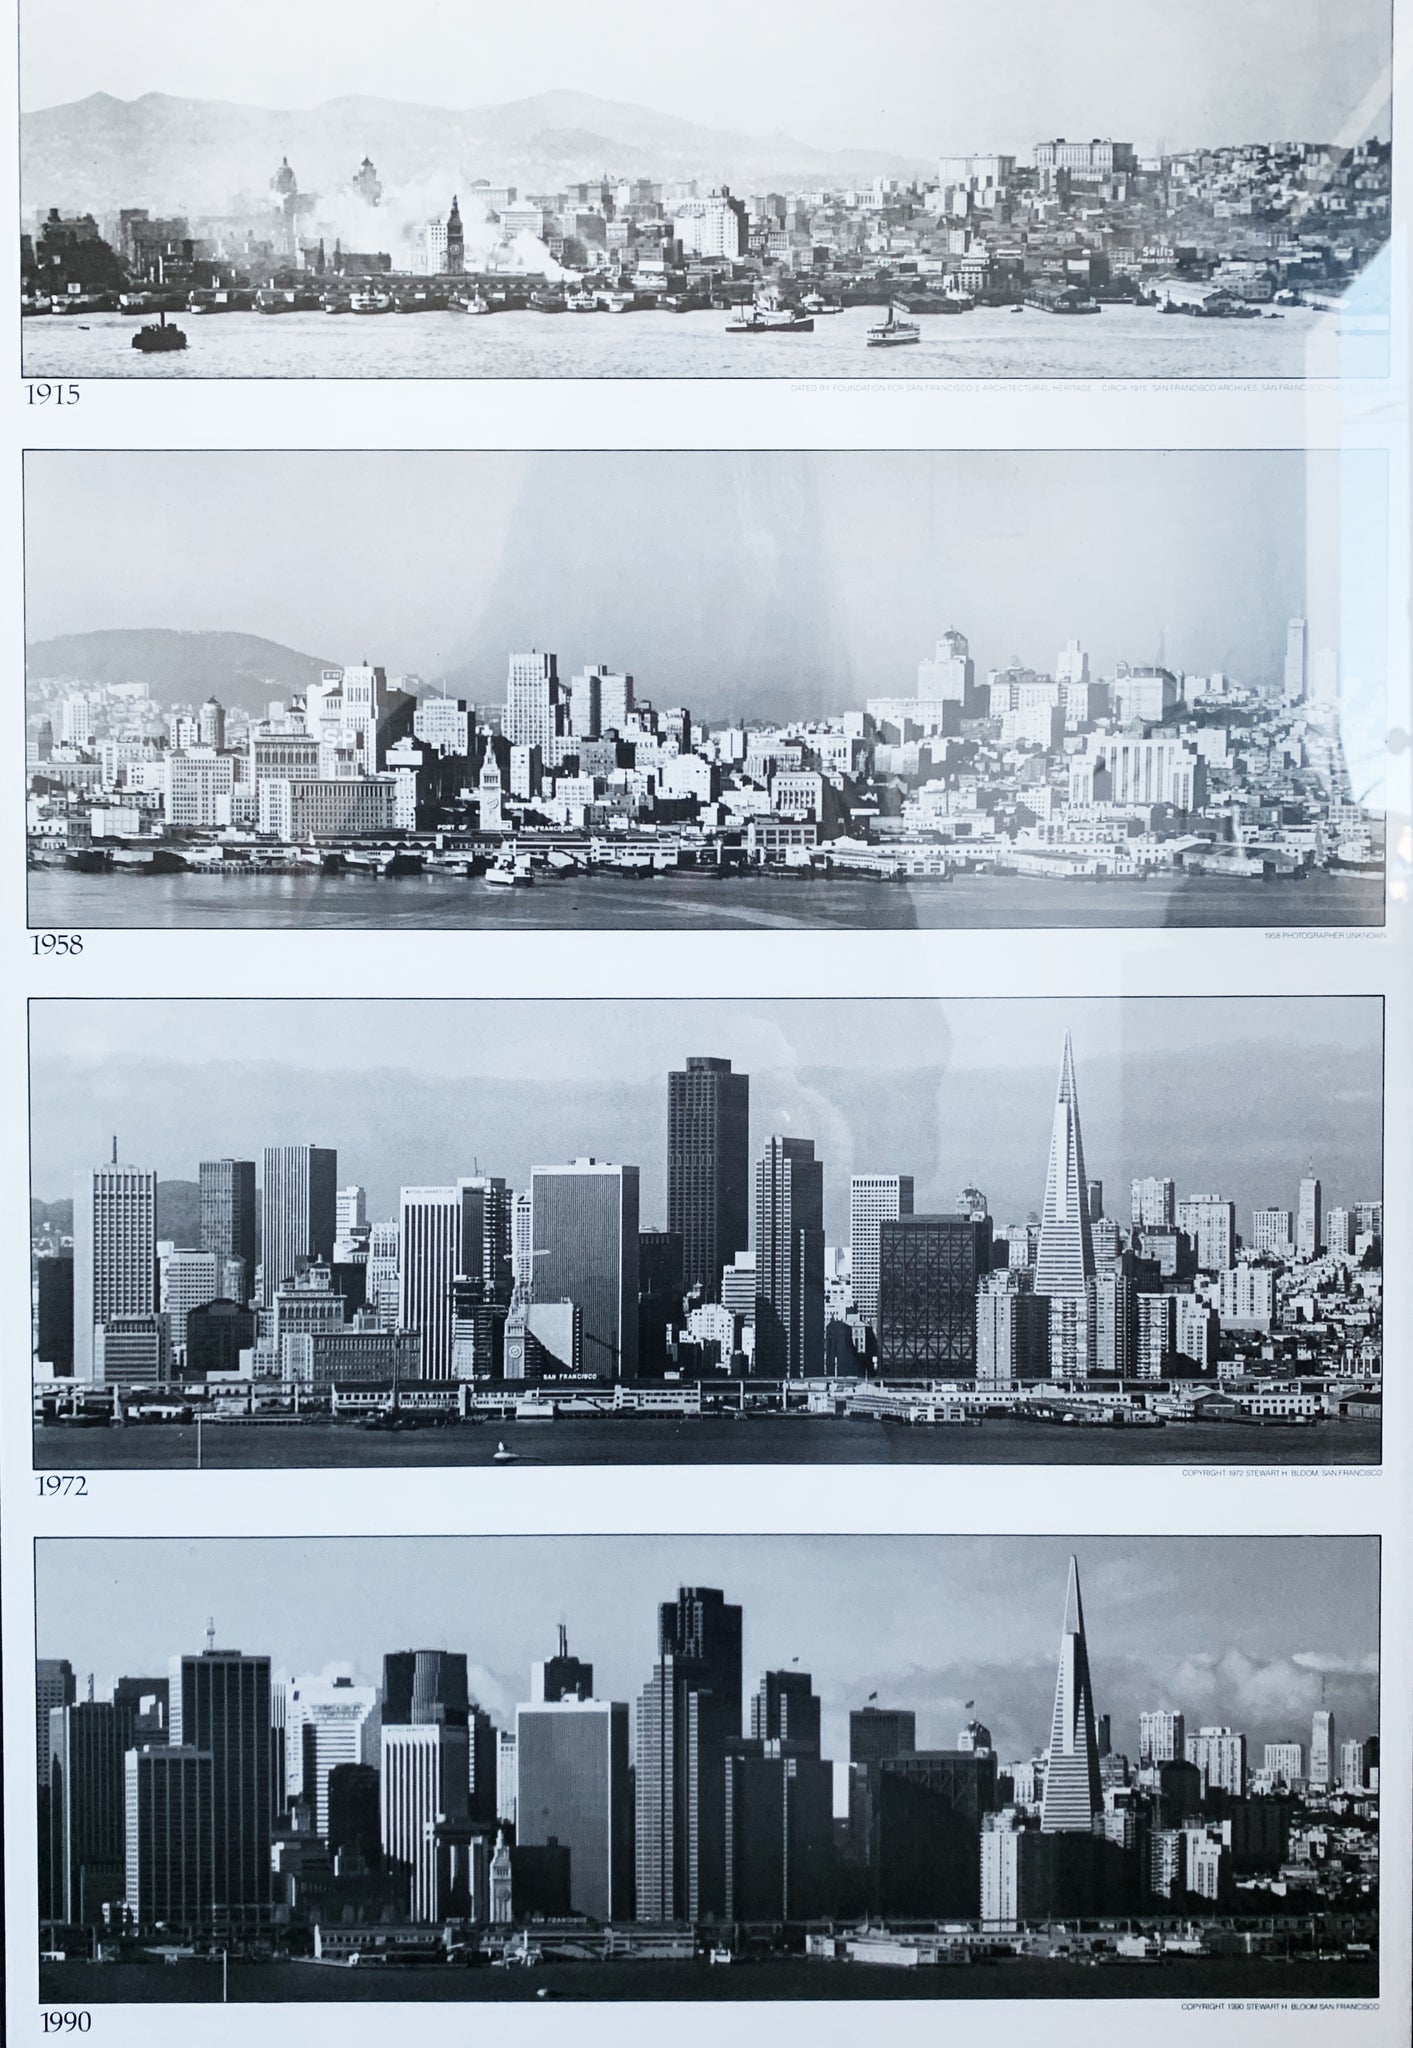 Vintage Framed San Francisco Retrospective Poster